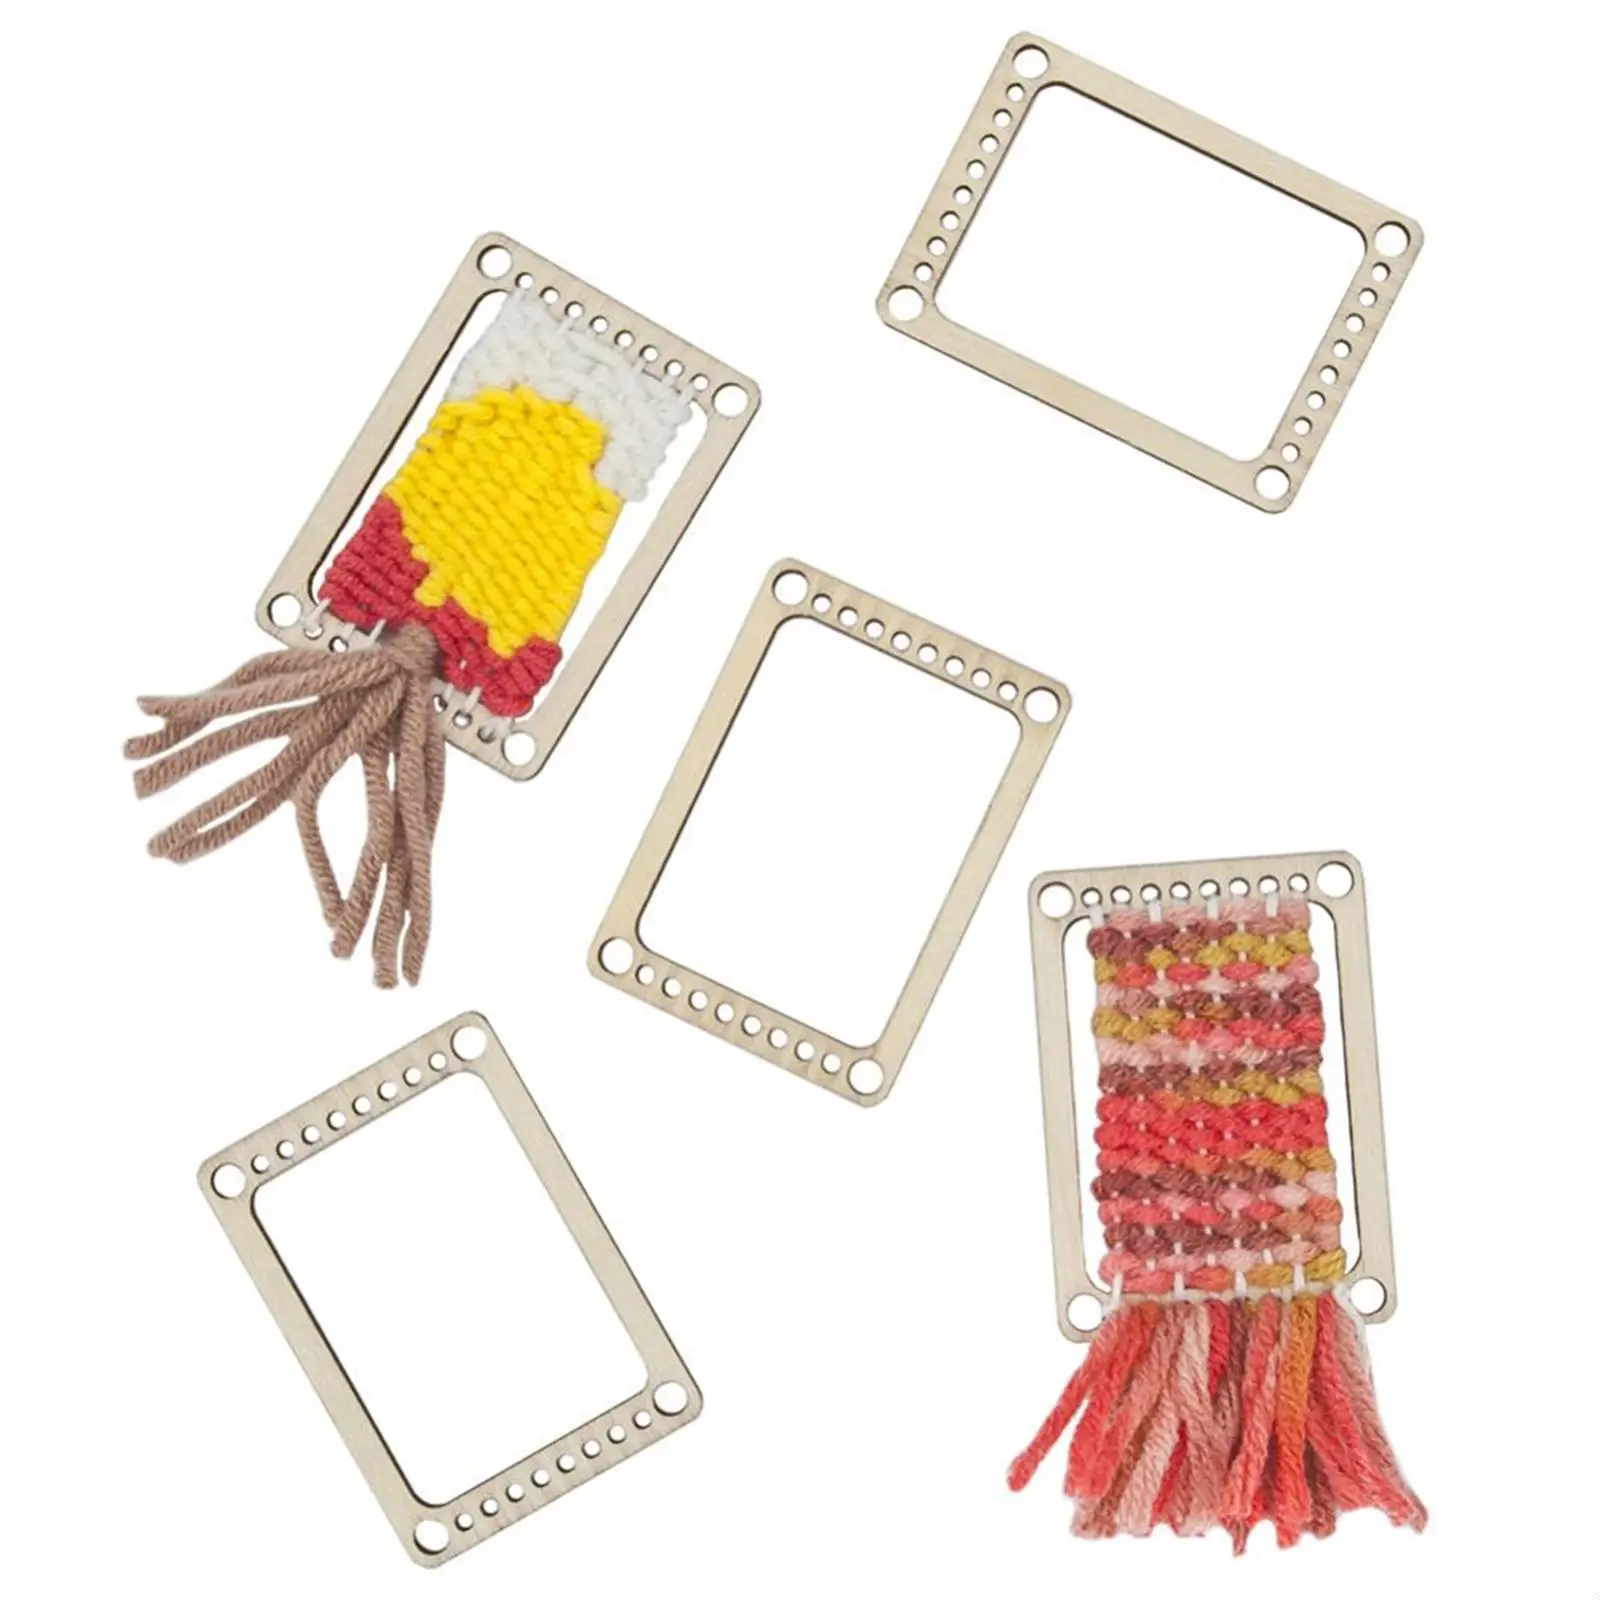 4Pcs Wooden Weaving Looms Weave Frame Knitting Coaster DIY Machine Rack